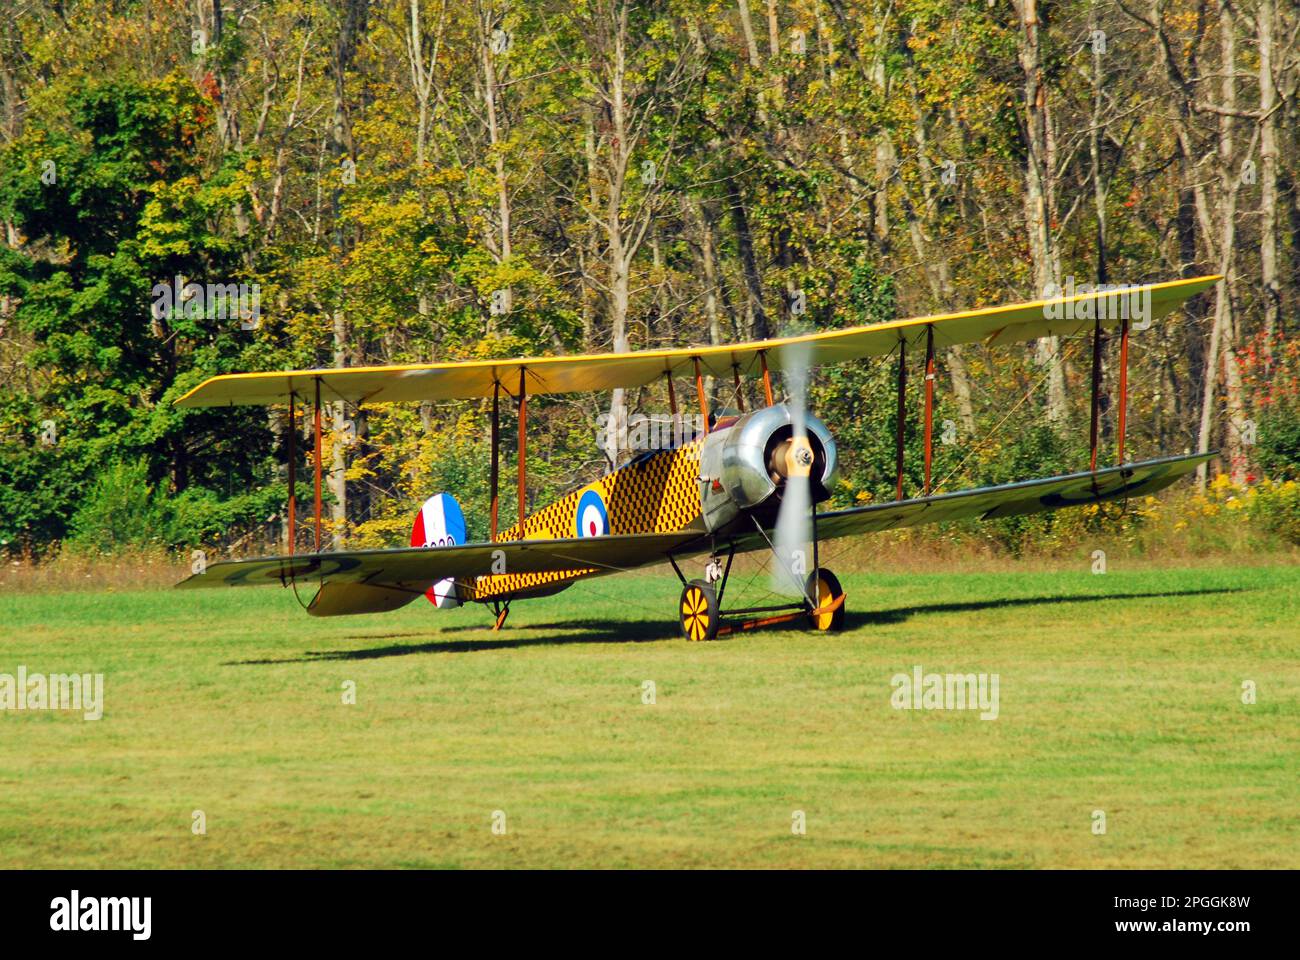 Ein britischer Avro 504k startet seine Propeller und bereitet sich auf den Start von einer Grasbahn in einem Luftfahrtmuseum vor, das historischen Flugzeugen gewidmet ist Stockfoto